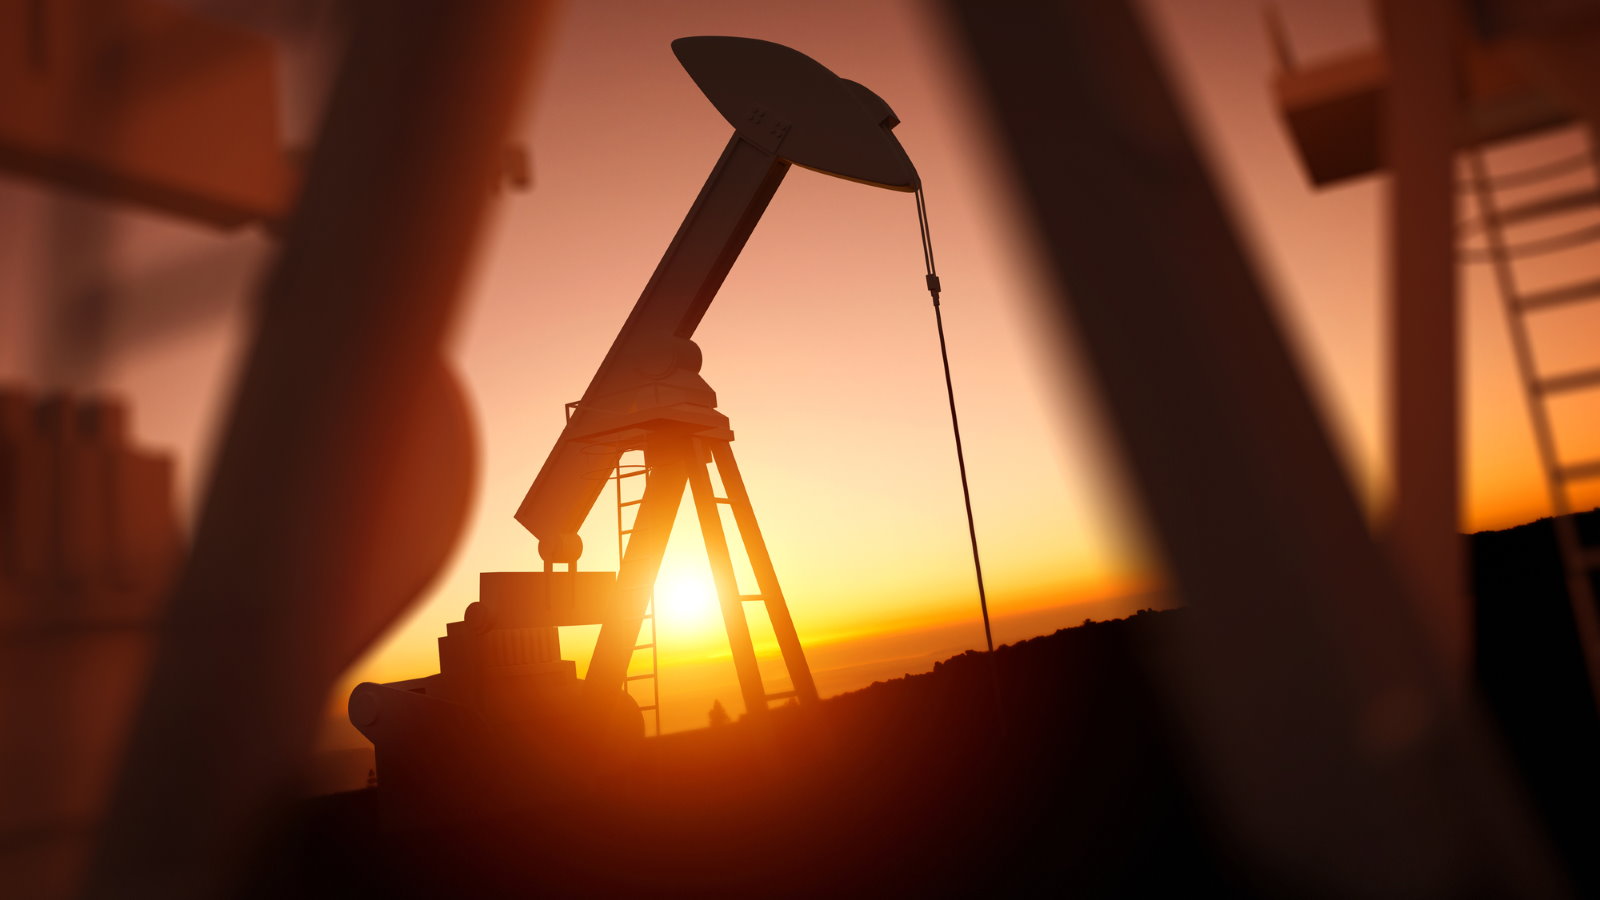 Цена нефти Brent поднялась выше $58 впервые с 22 января 2020 года